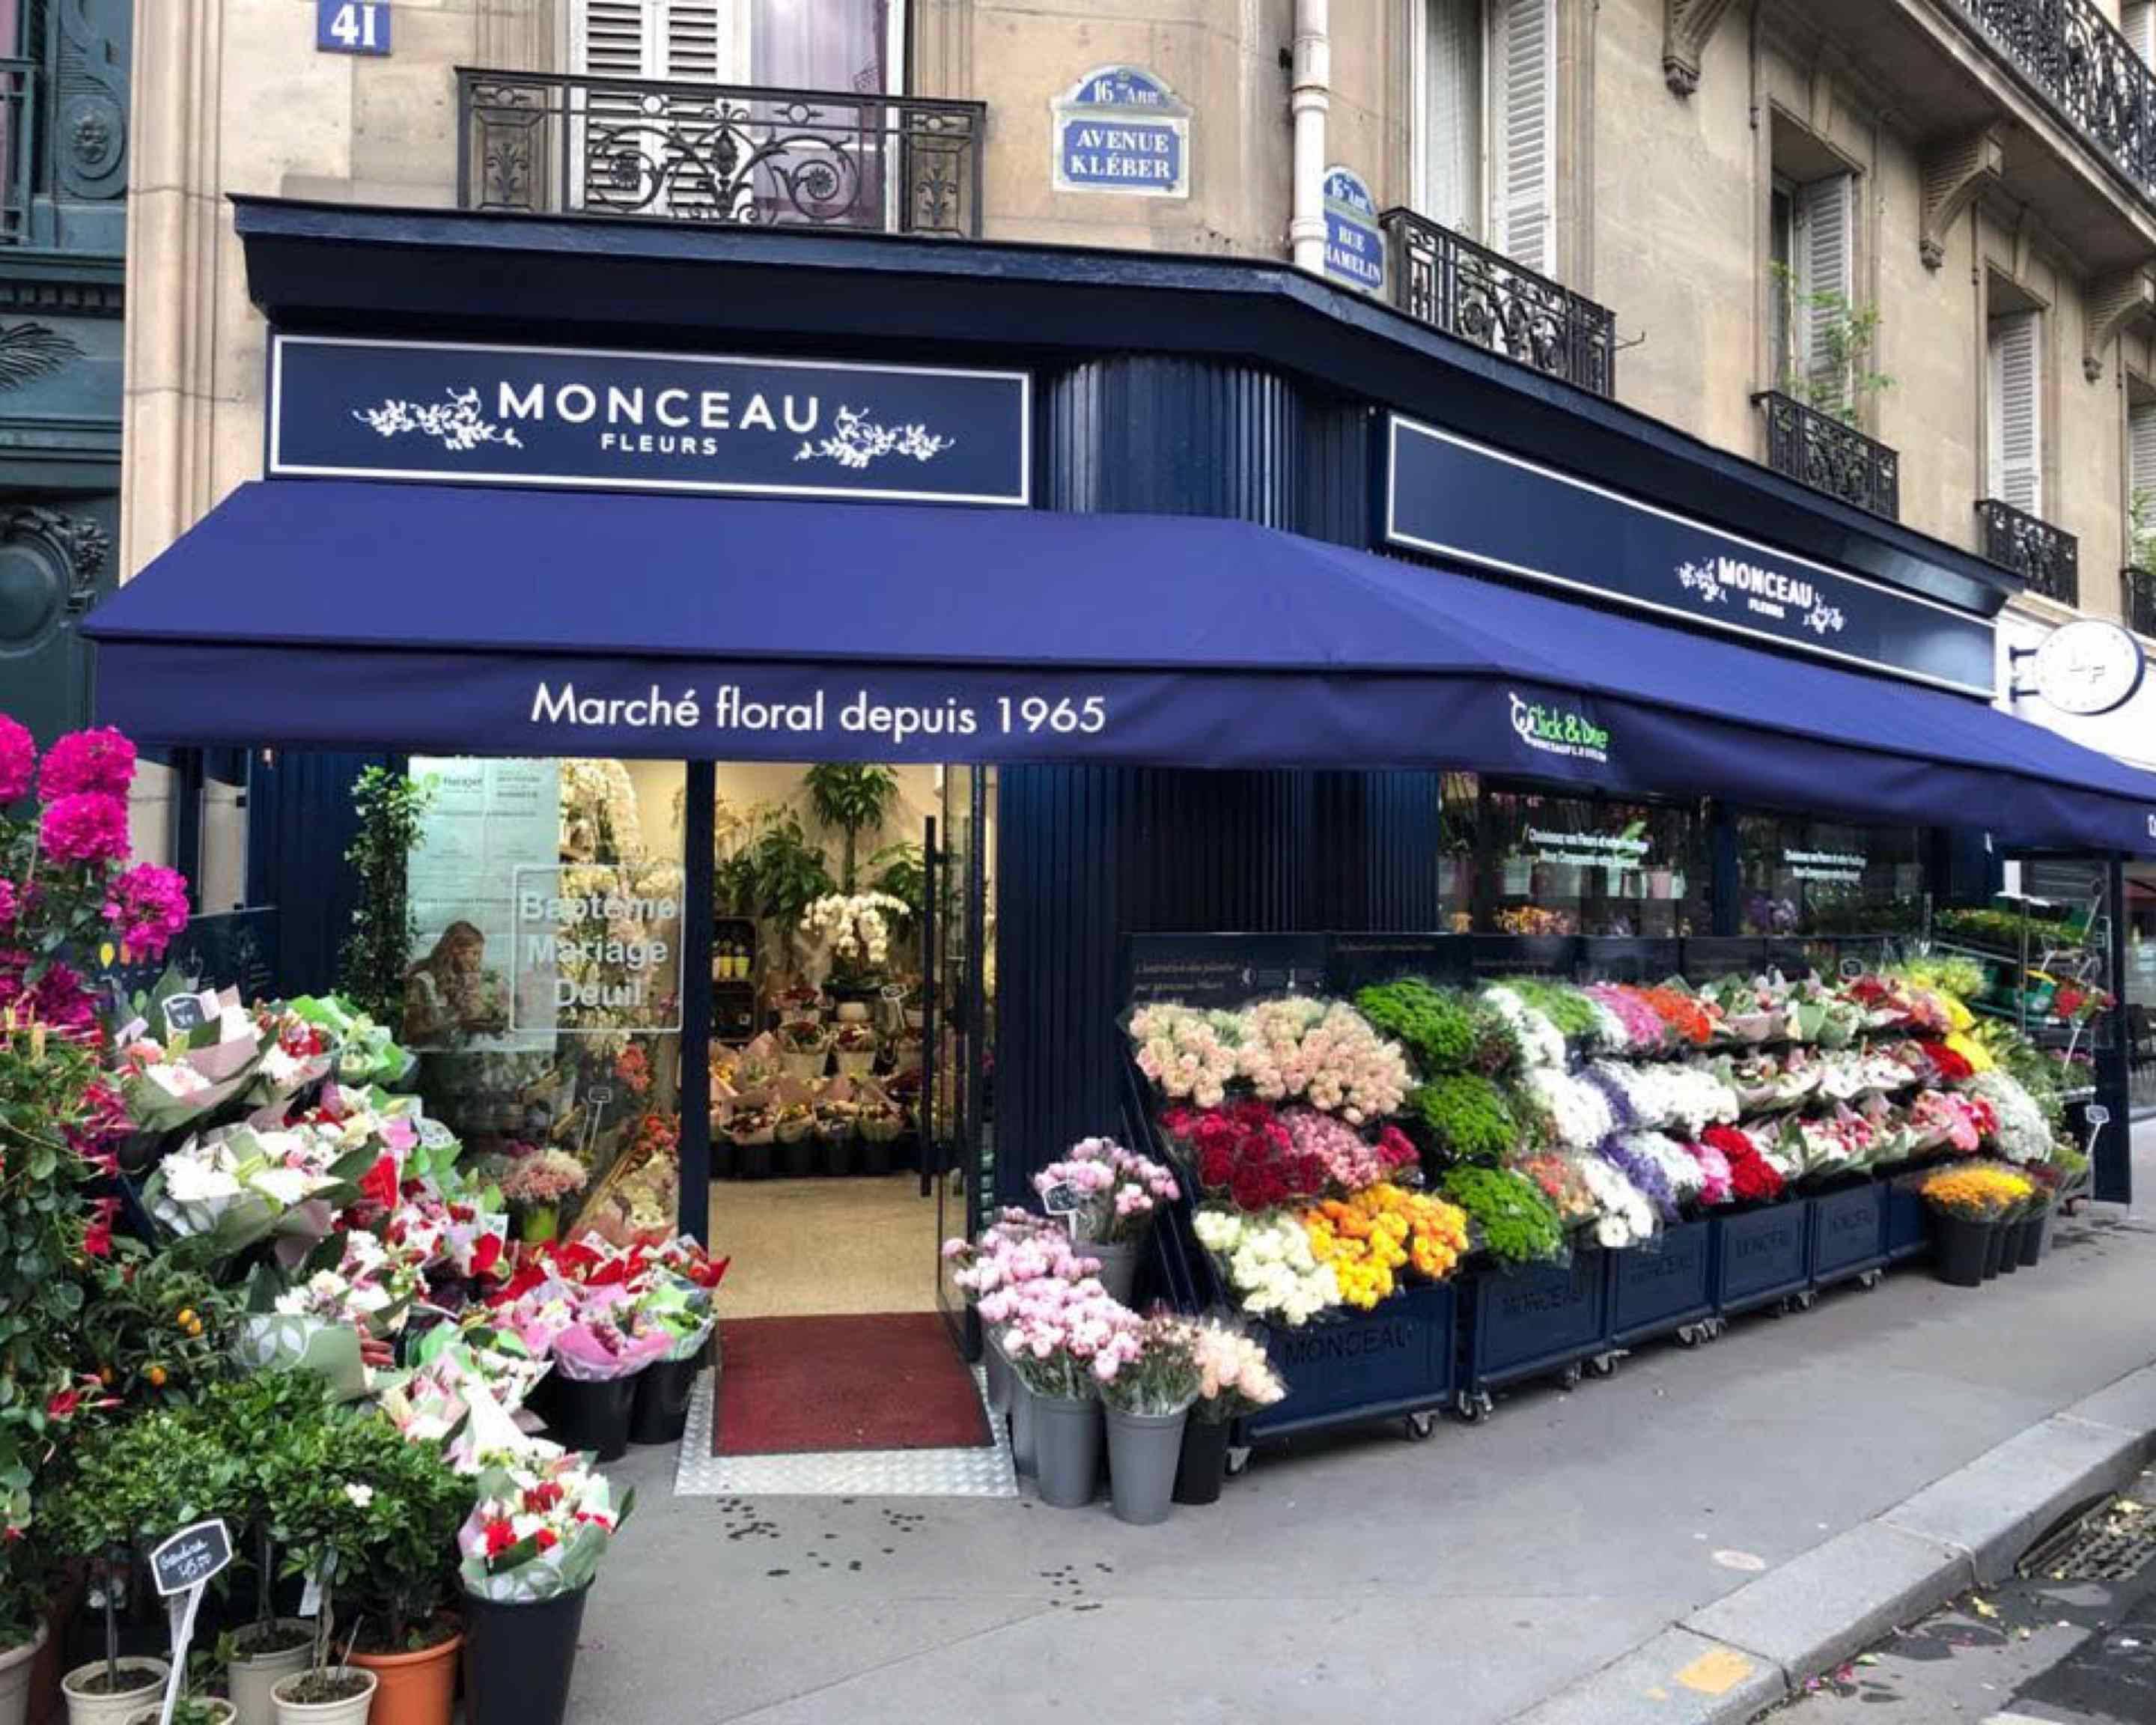 Monceau Fleurs Paris Reaumur Delivery in Paris - Menu and prices | Uber Eats